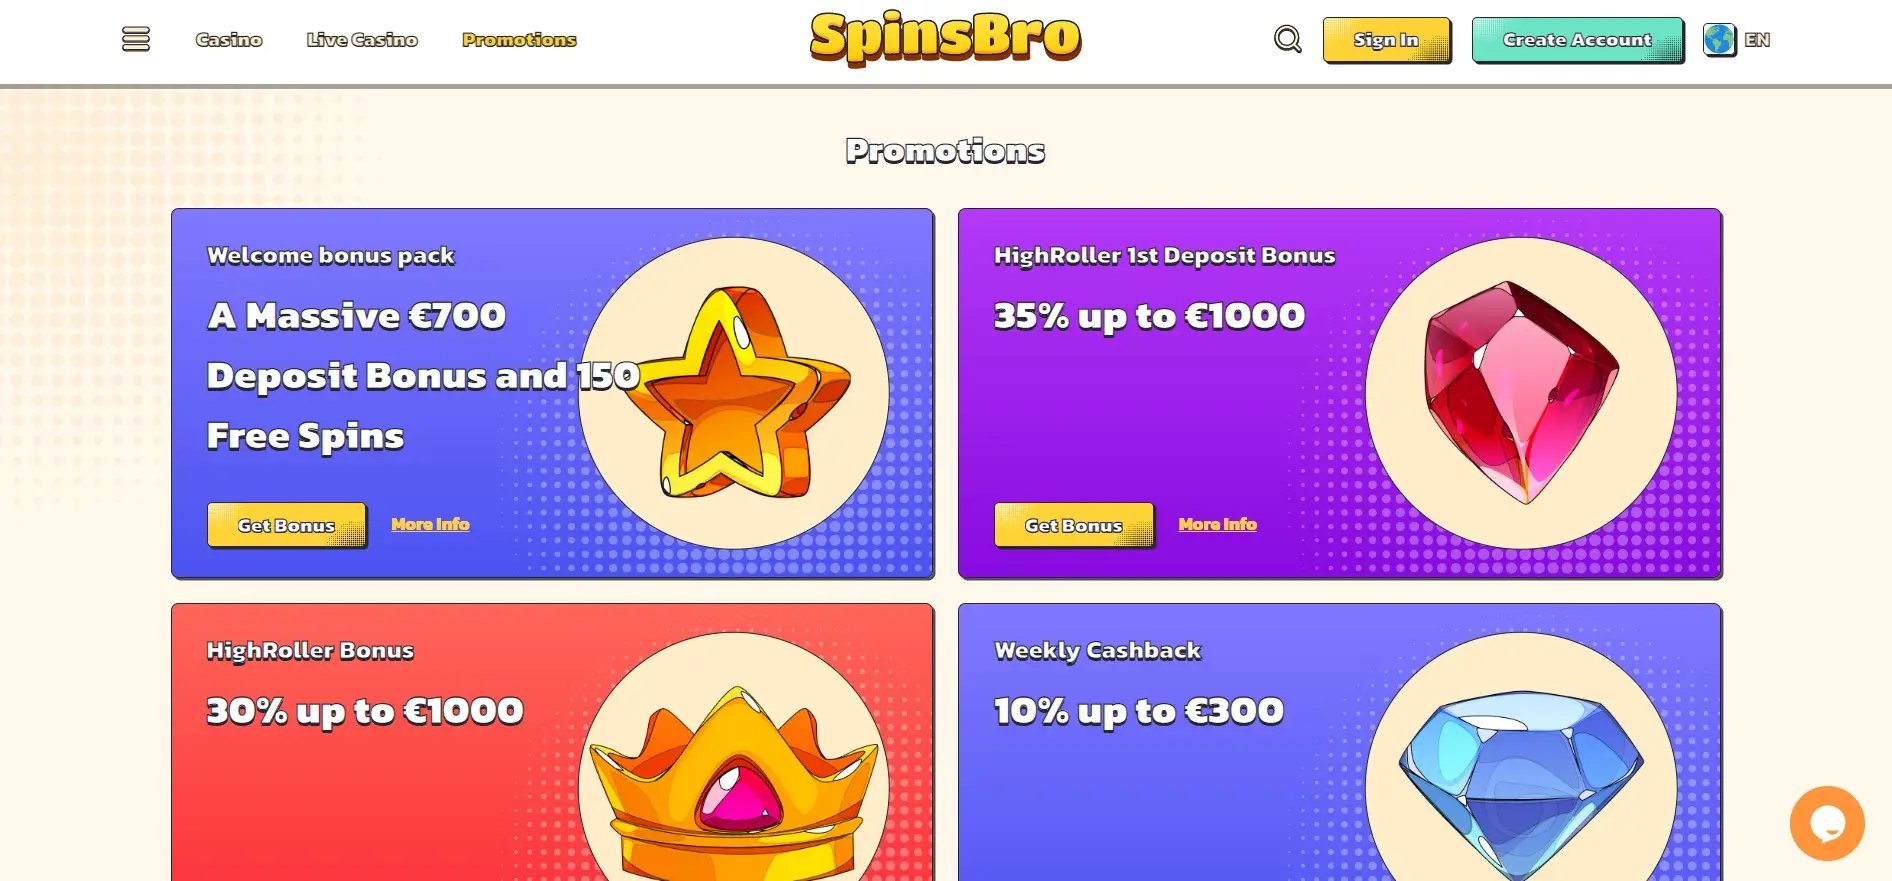 Online casino Spinsbro bonuses